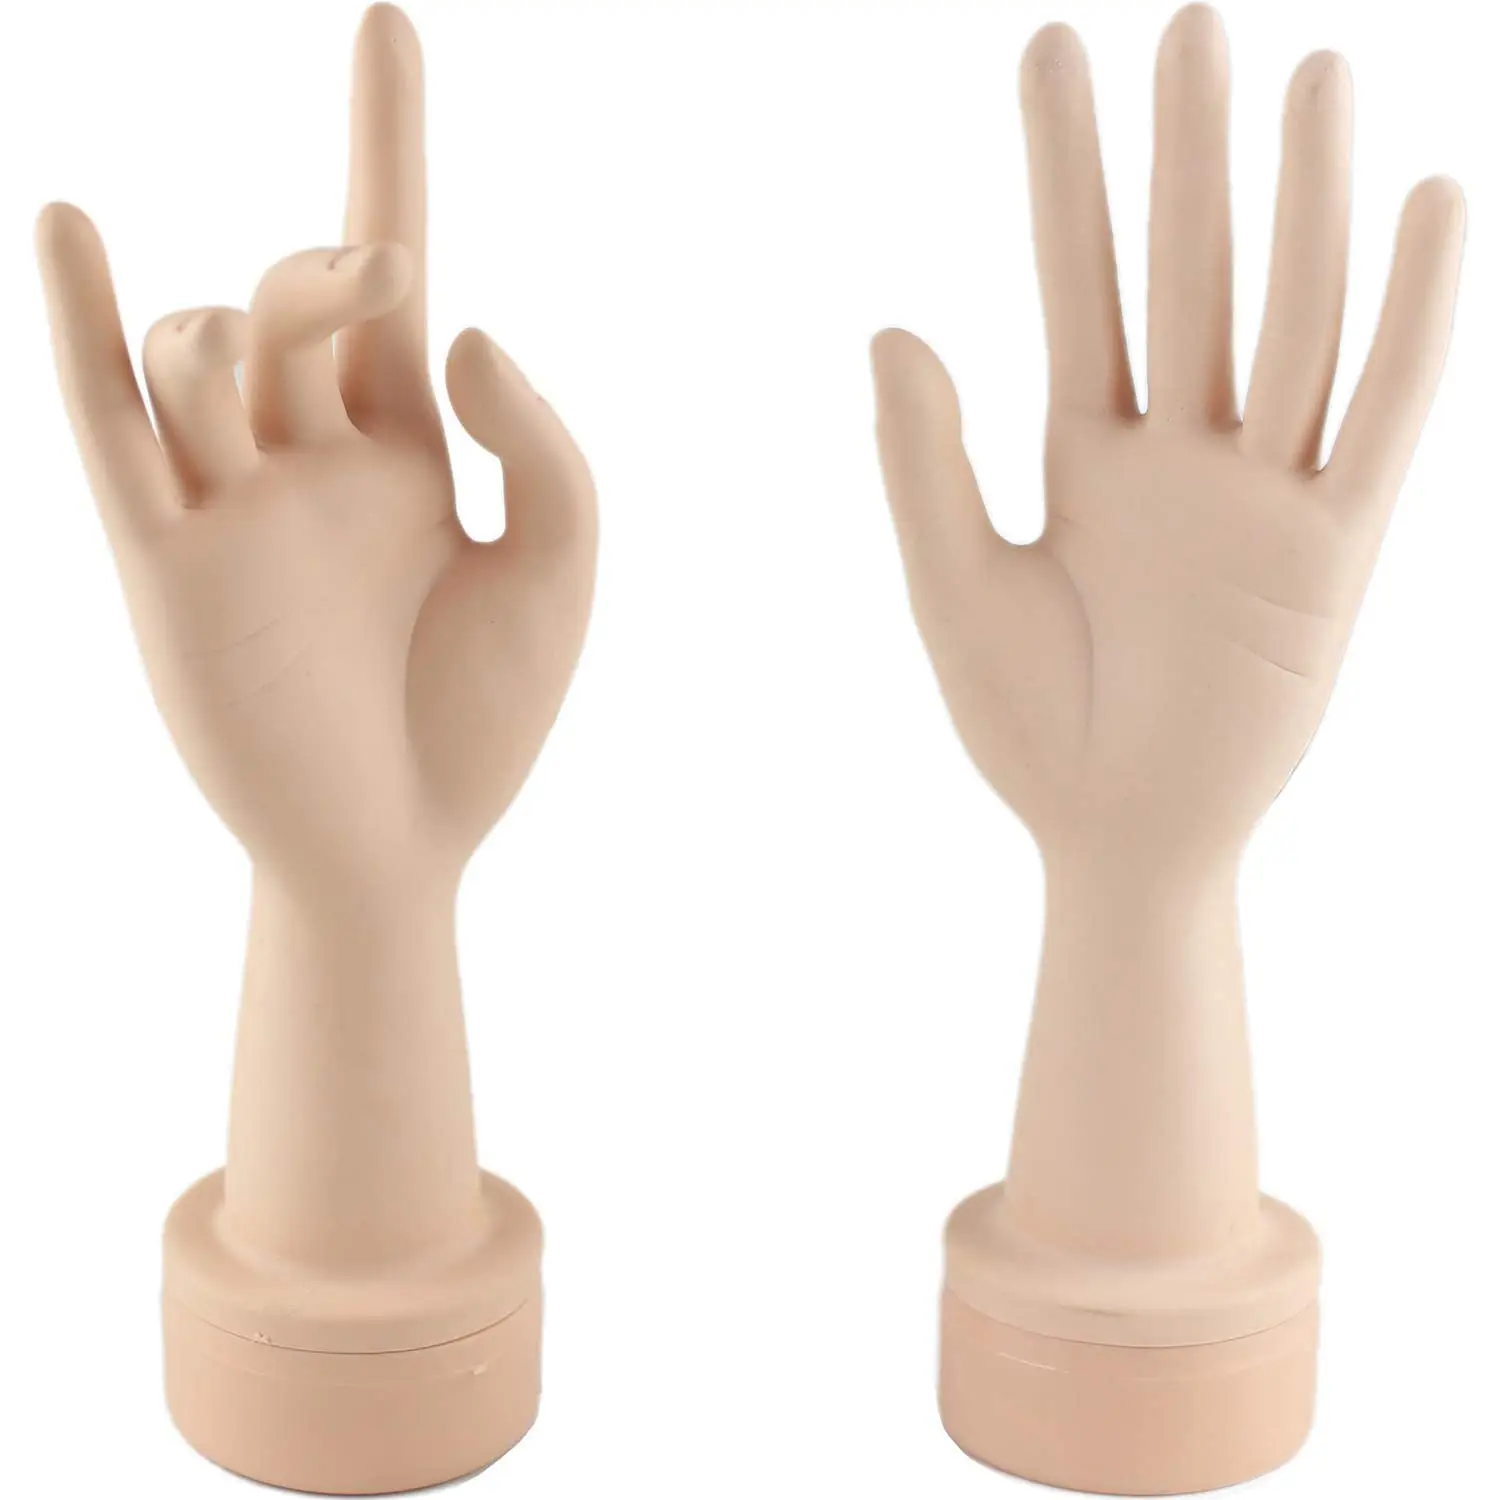 ฝึกฝนการแสดงเล็บมือที่มีความยืดหยุ่นด้วยนิ้วมือที่อ่อนนุ่มและฝึกฝนการทำเล็บมือด้วยมือปลอม